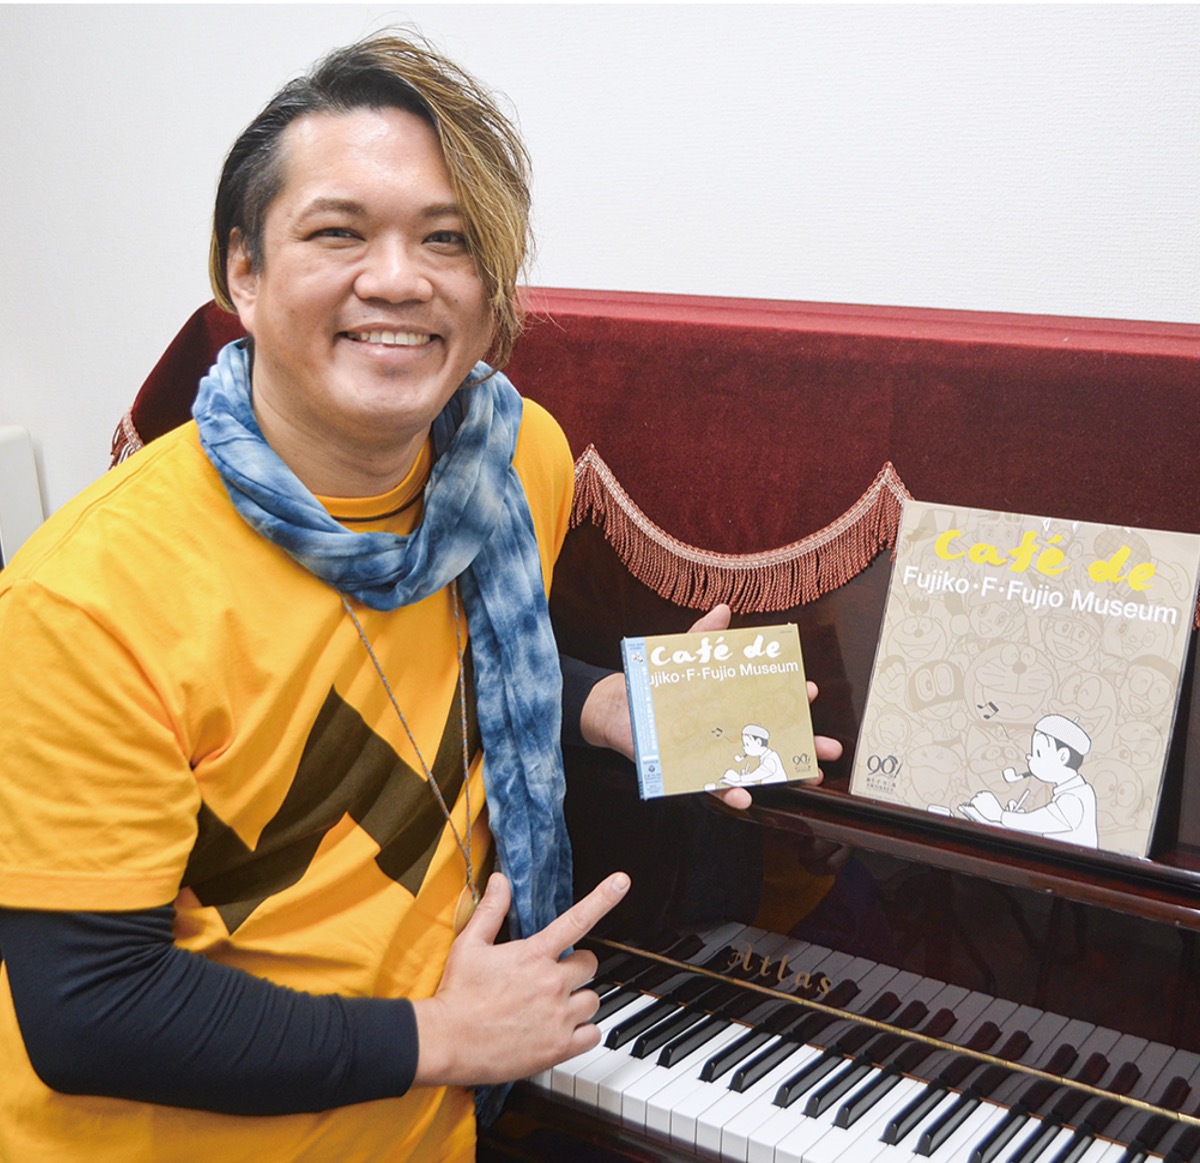  ピアニスト今井さん ｢ドラえもん｣など名曲１枚に 藤子・F・不二雄生誕90年記念 | 平塚 | タウンニュース